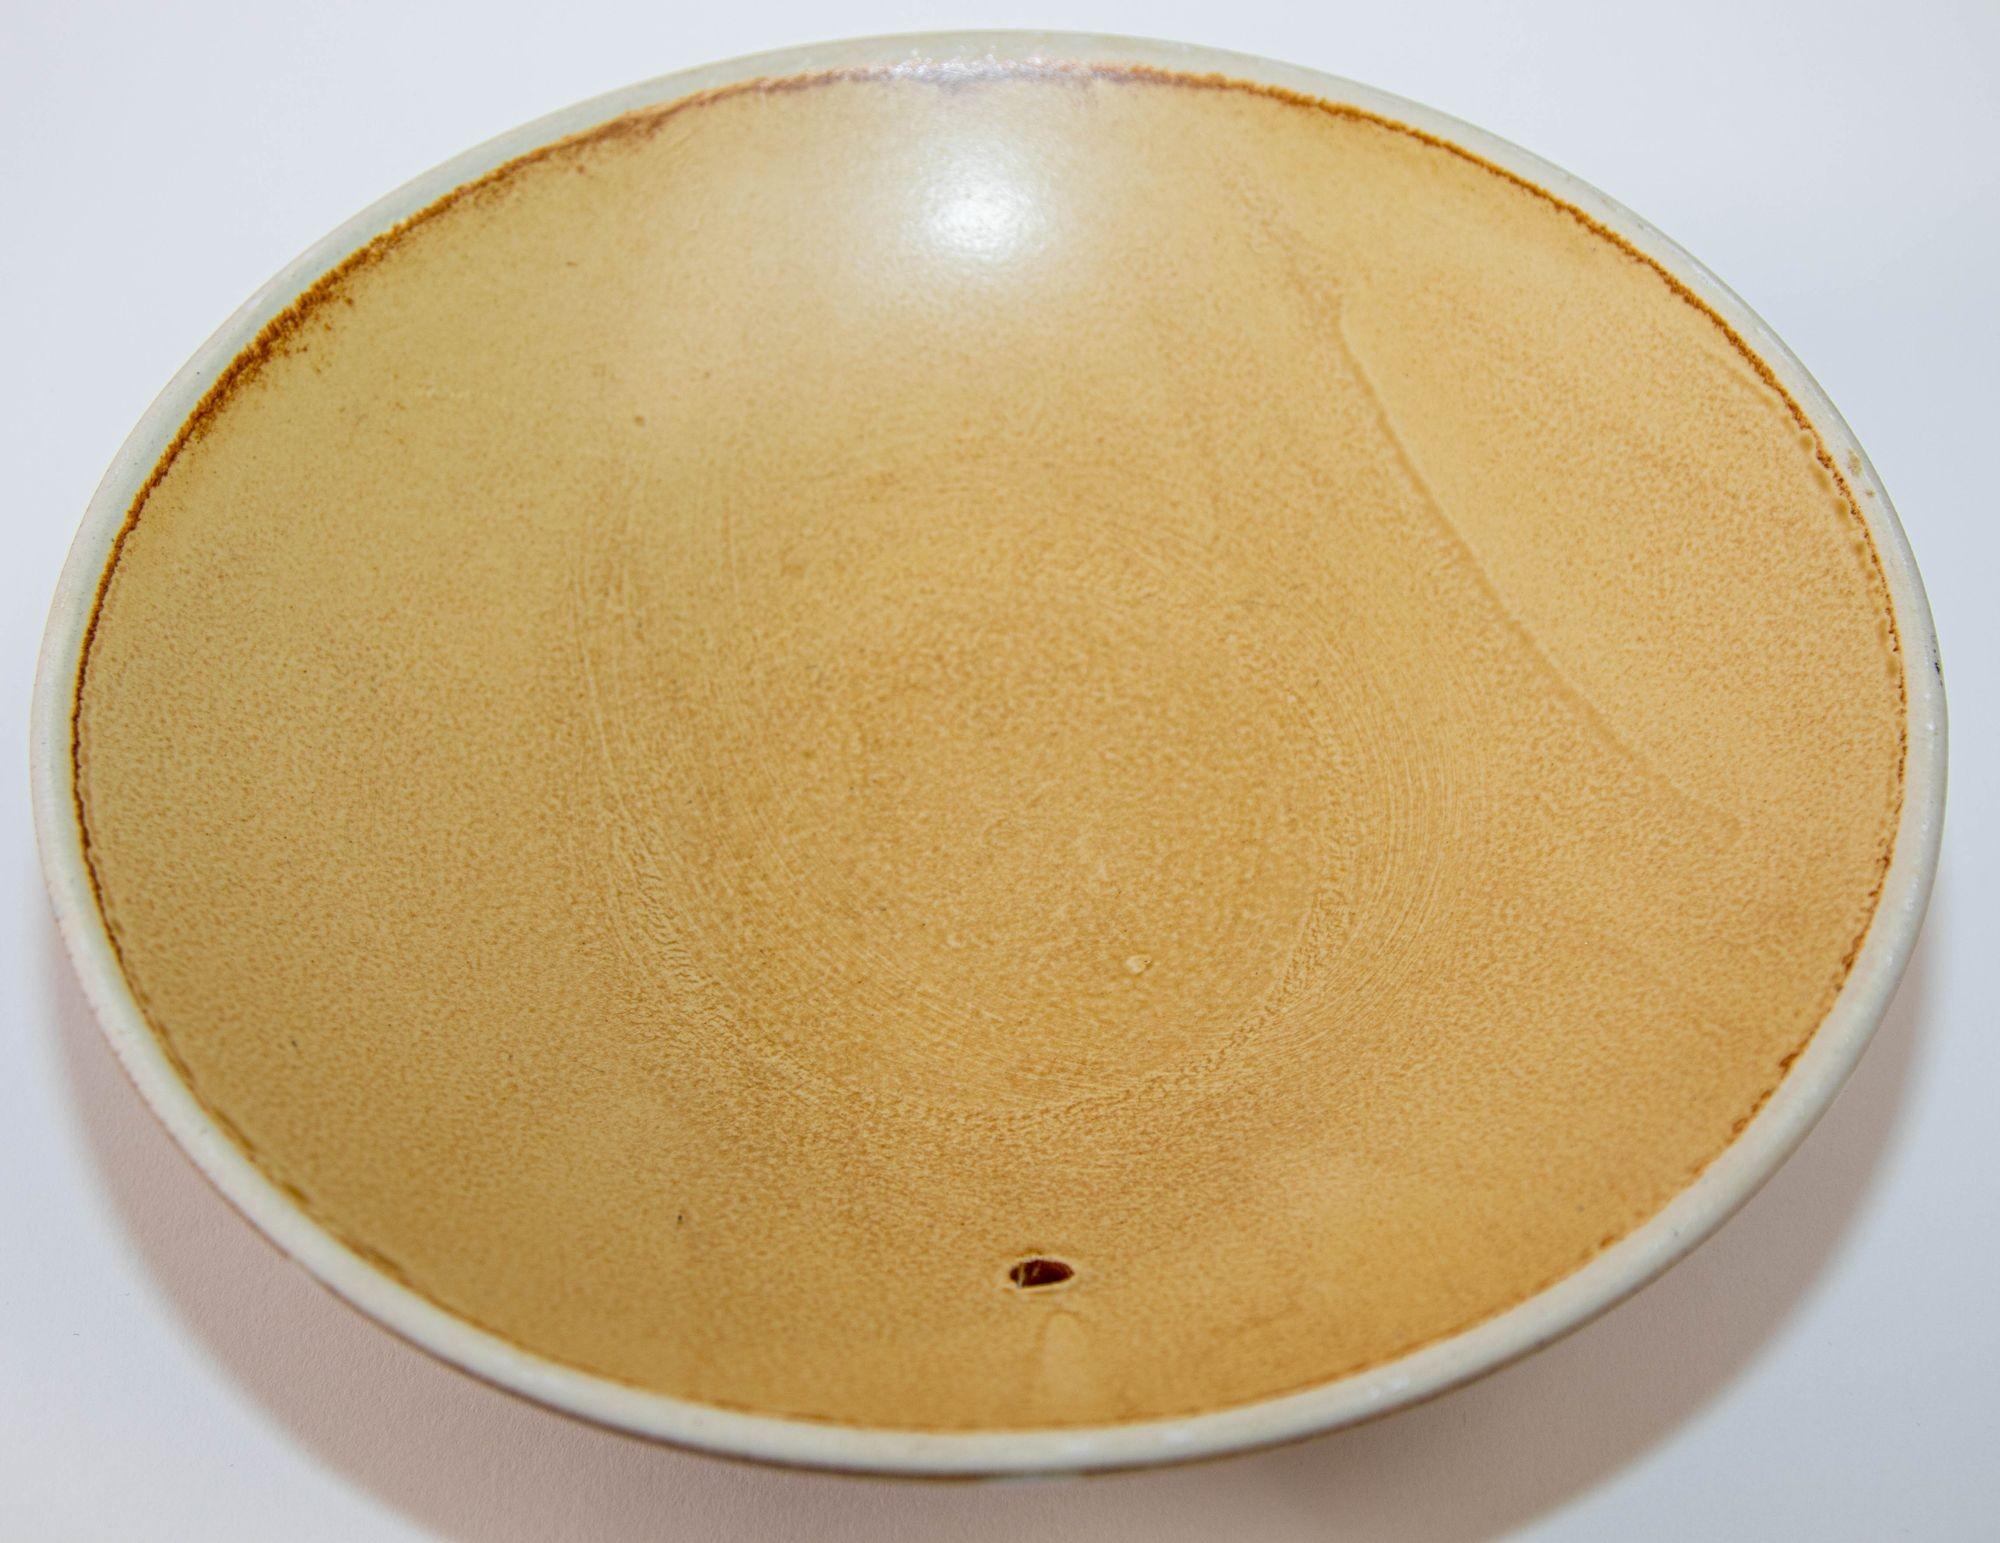 Vintage Mid Century Japanese Pottery Shallow Footed Bowl Wabi Sabi Honey Color 10 inches Diameter.
Circa 1950, Made in Japan.
Poterie artisanale japonaise couleur miel sur le dessus avec des lignes géométriques crème et marron foncé sur le dessous,